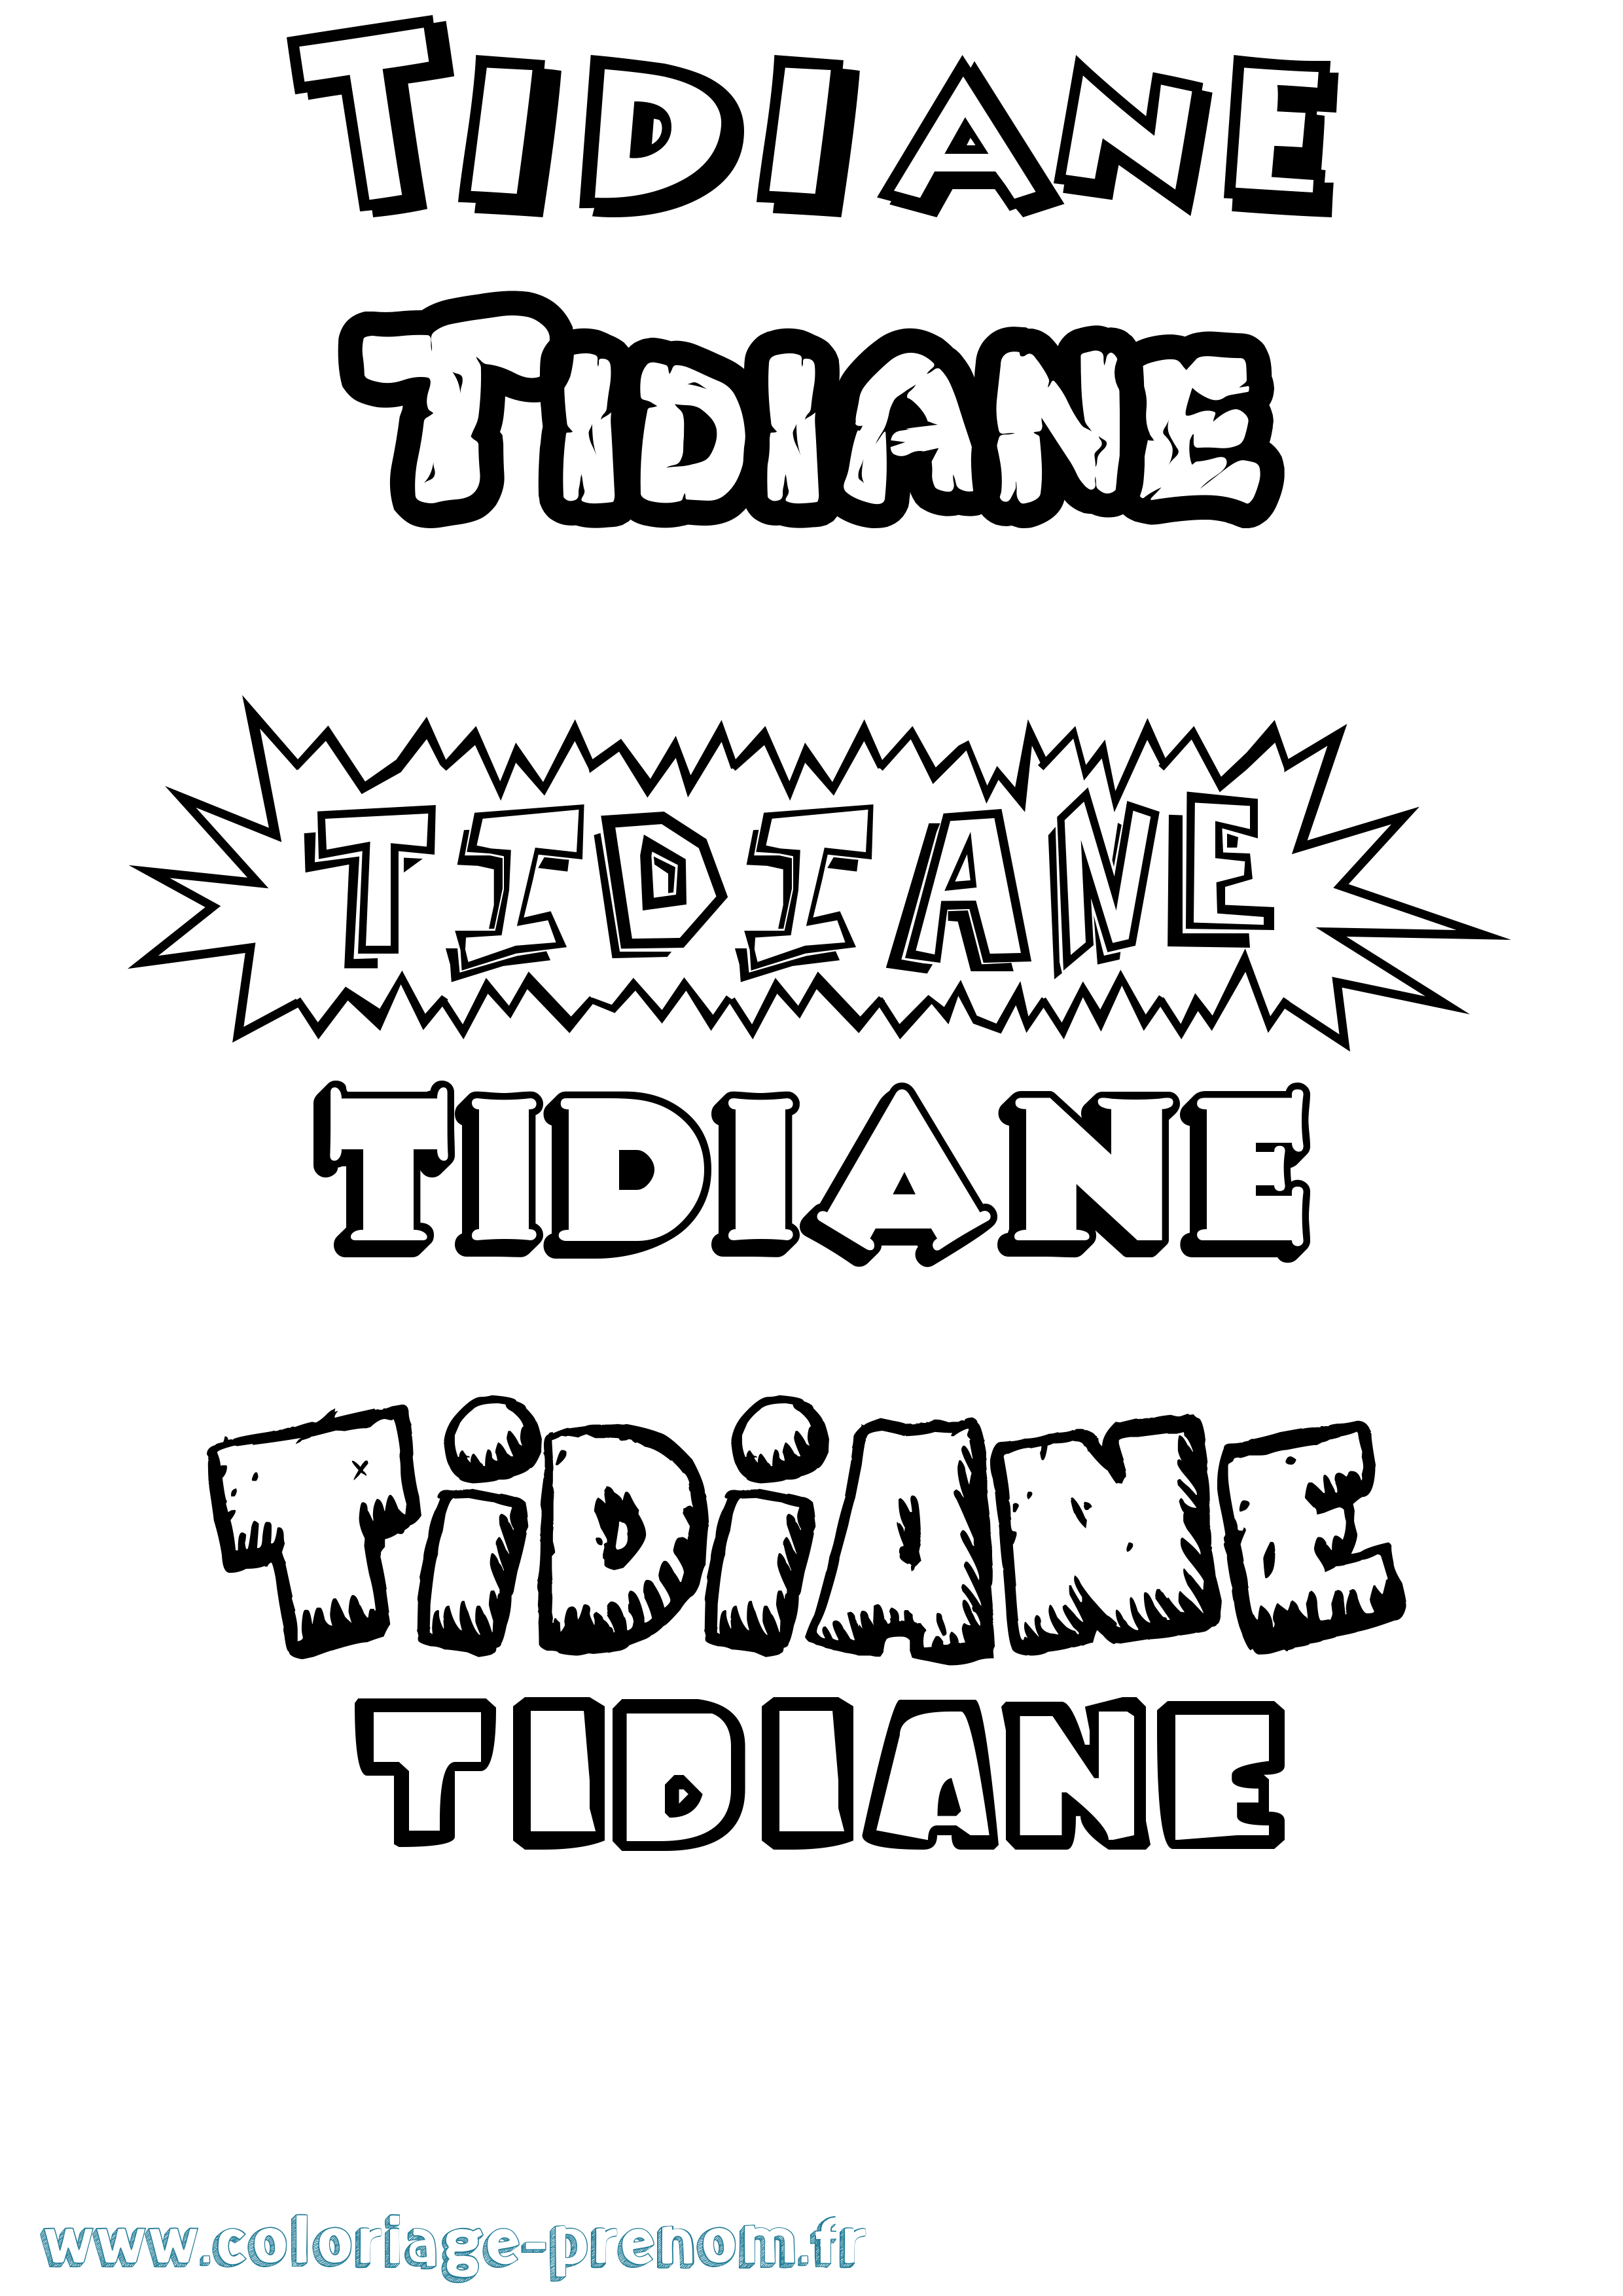 Coloriage prénom Tidiane